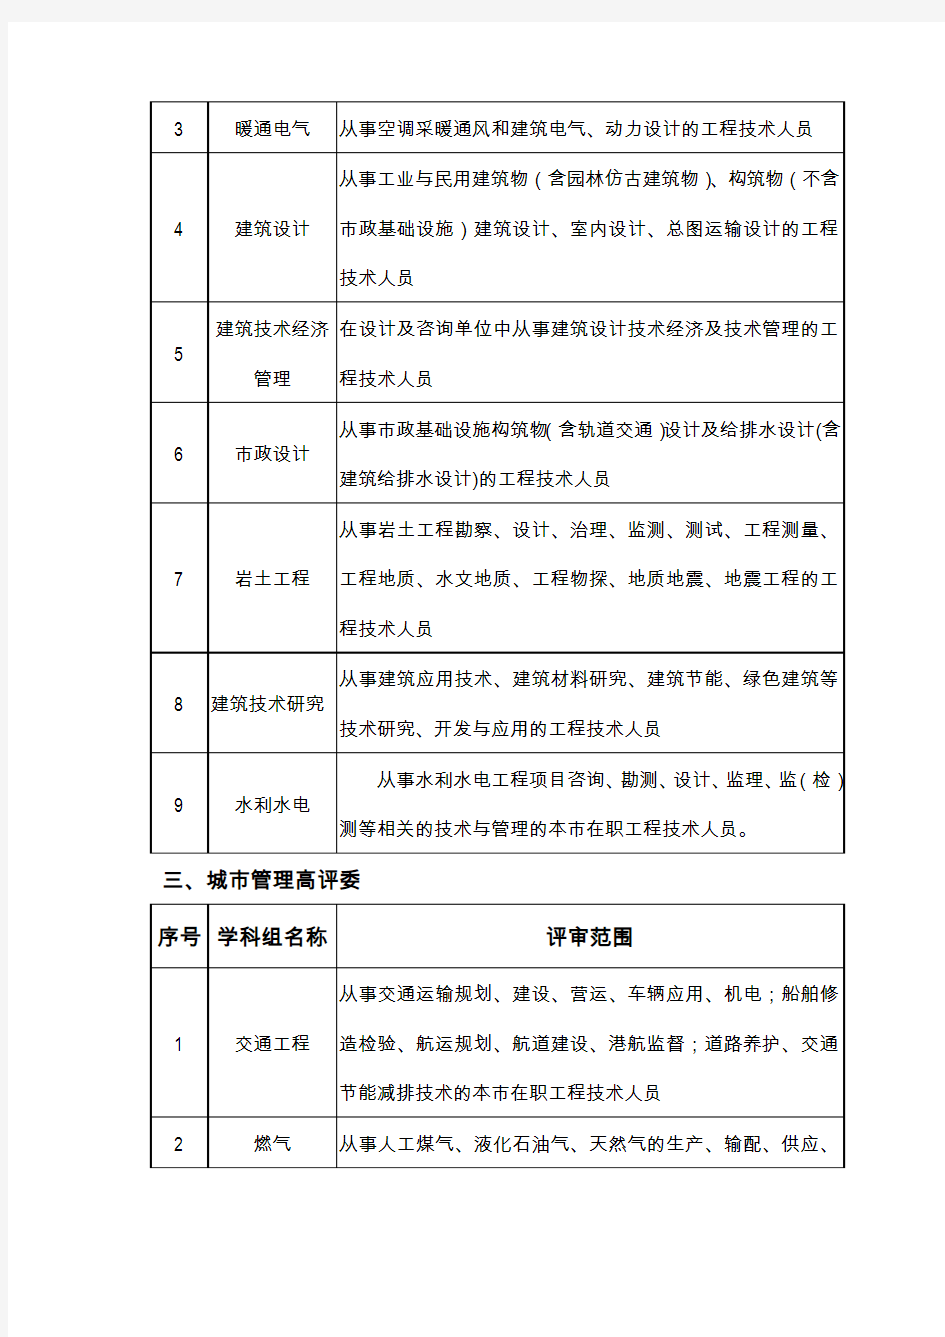 2018年上海高评委建设交通类各高评委专业划分